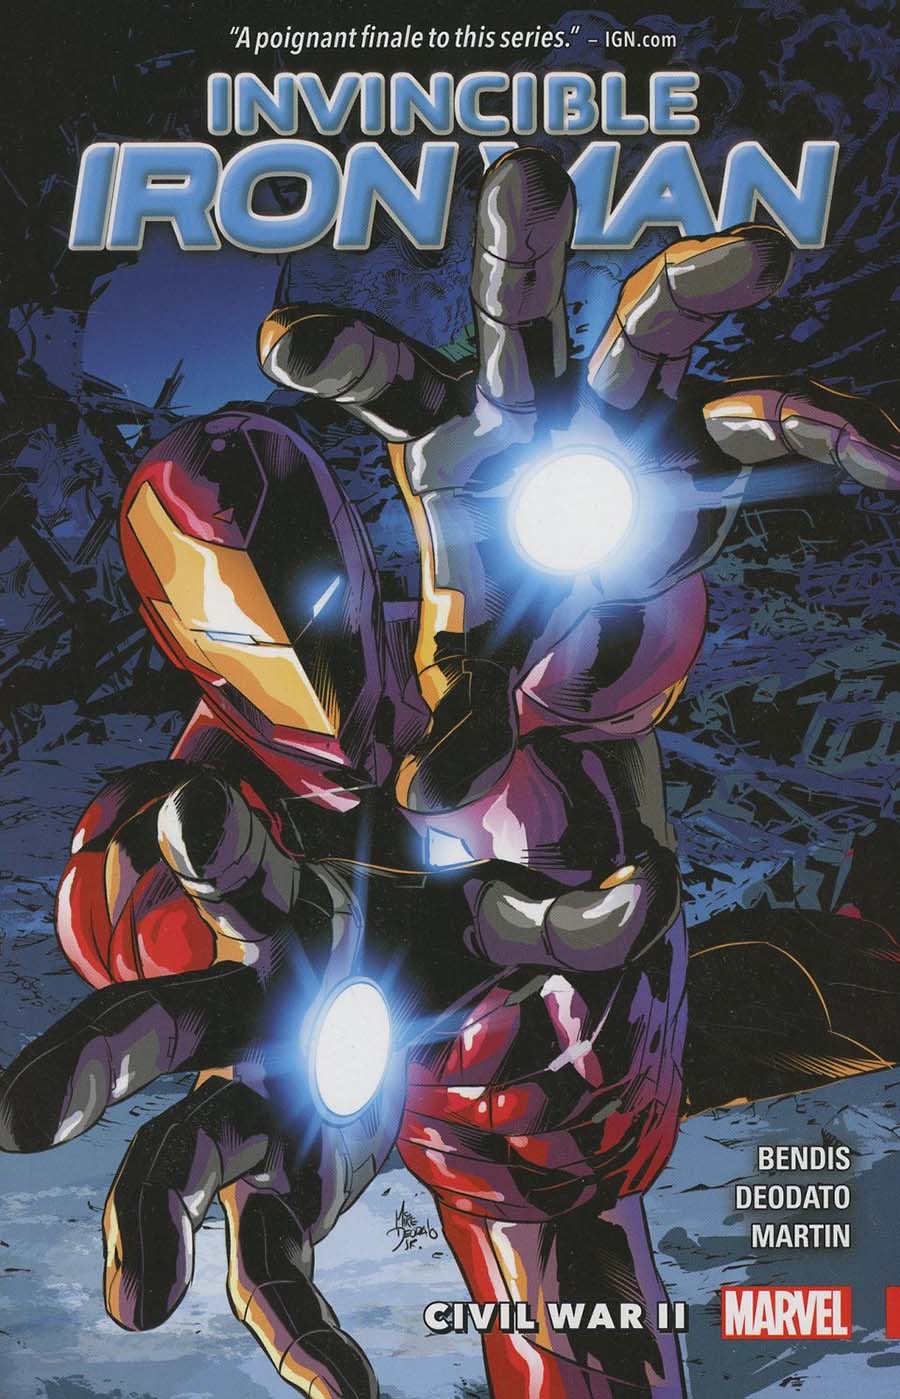 Invincible Iron Man (2015) Vol 3 Civil War II TP